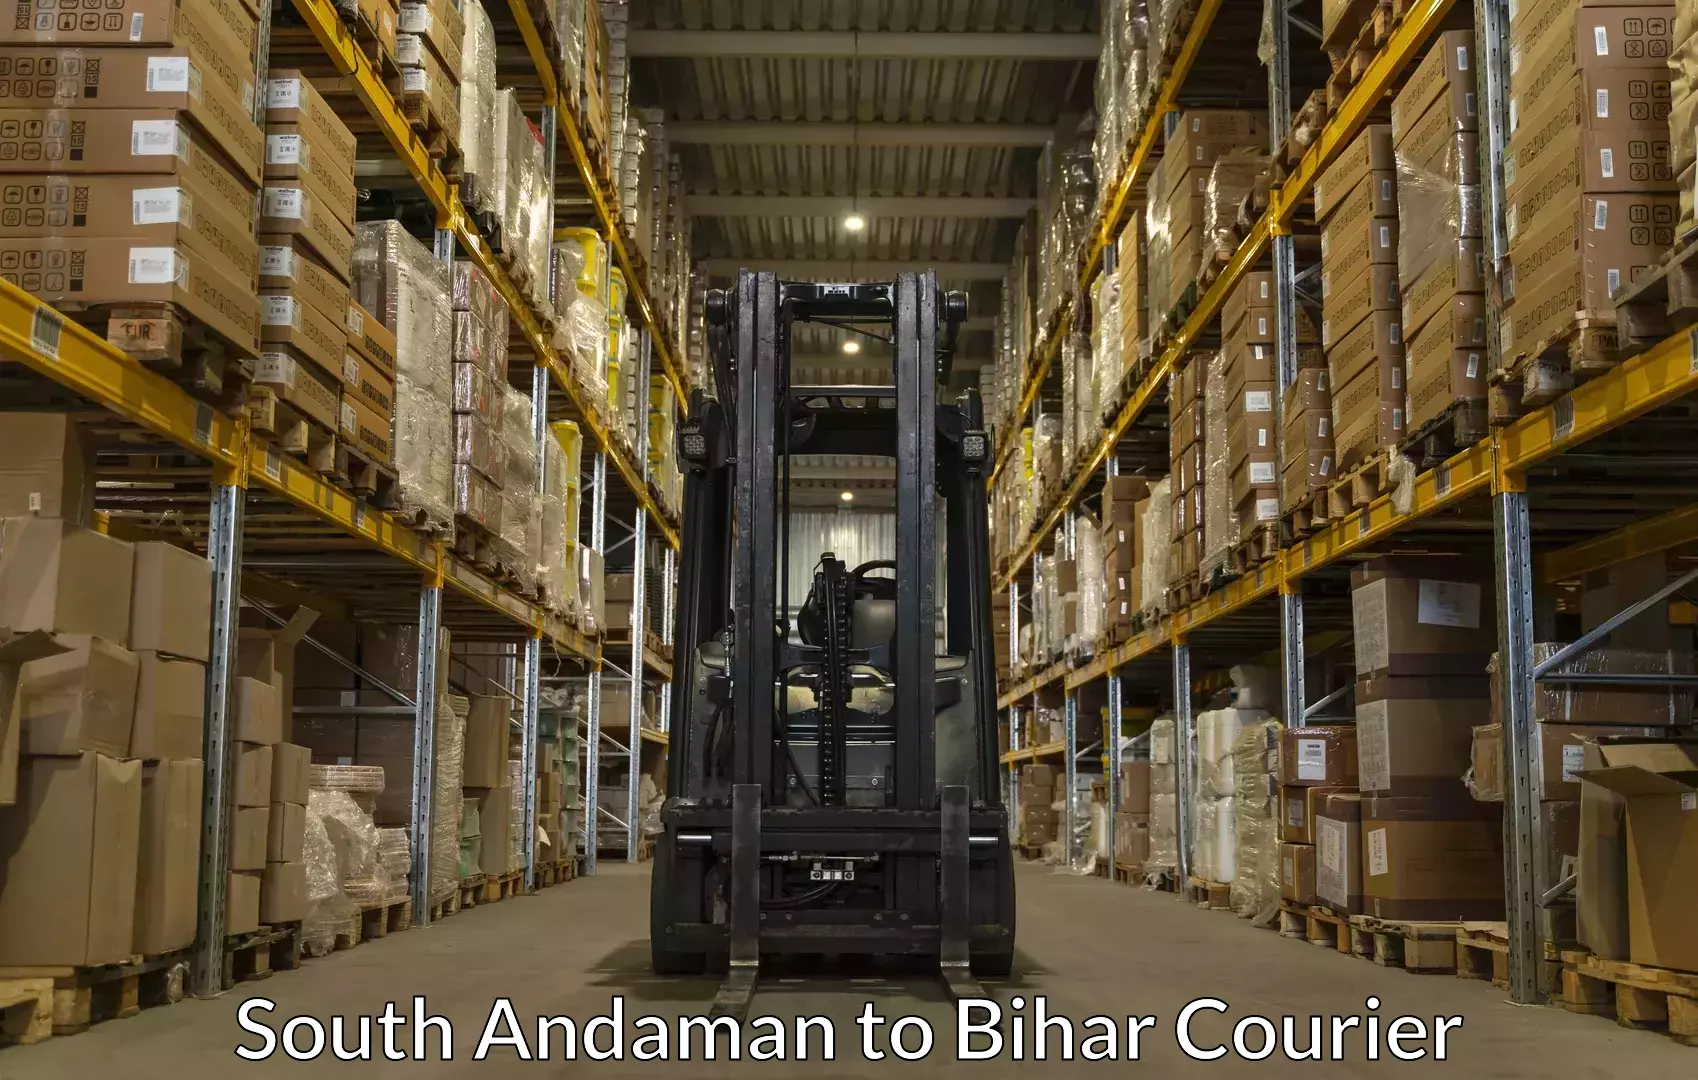 Furniture transport experts South Andaman to Bihar